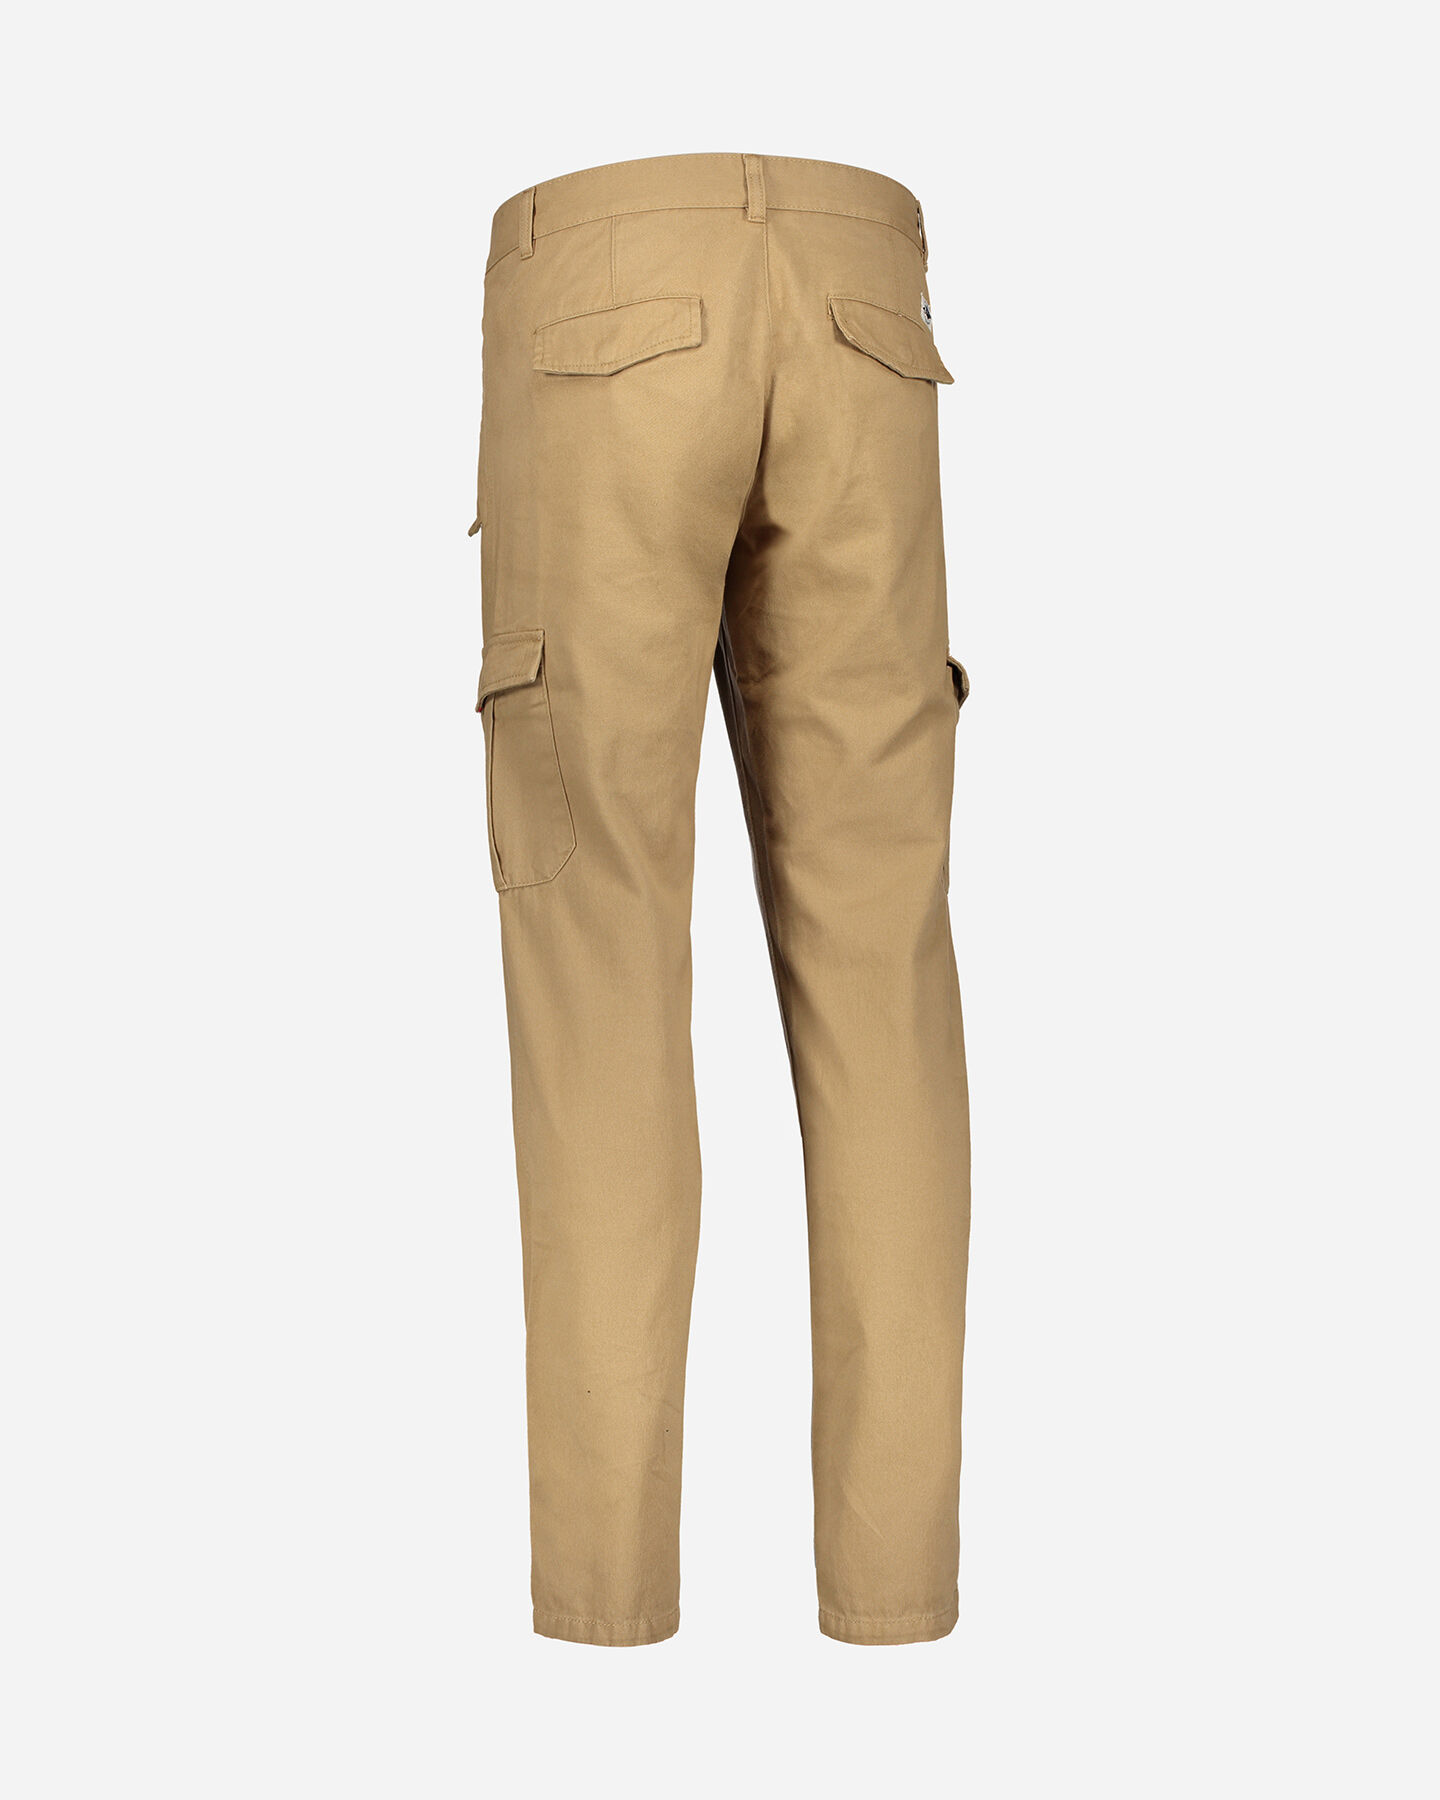  Pantalone BEAR POCKETS M S4053933|0306|S scatto 2